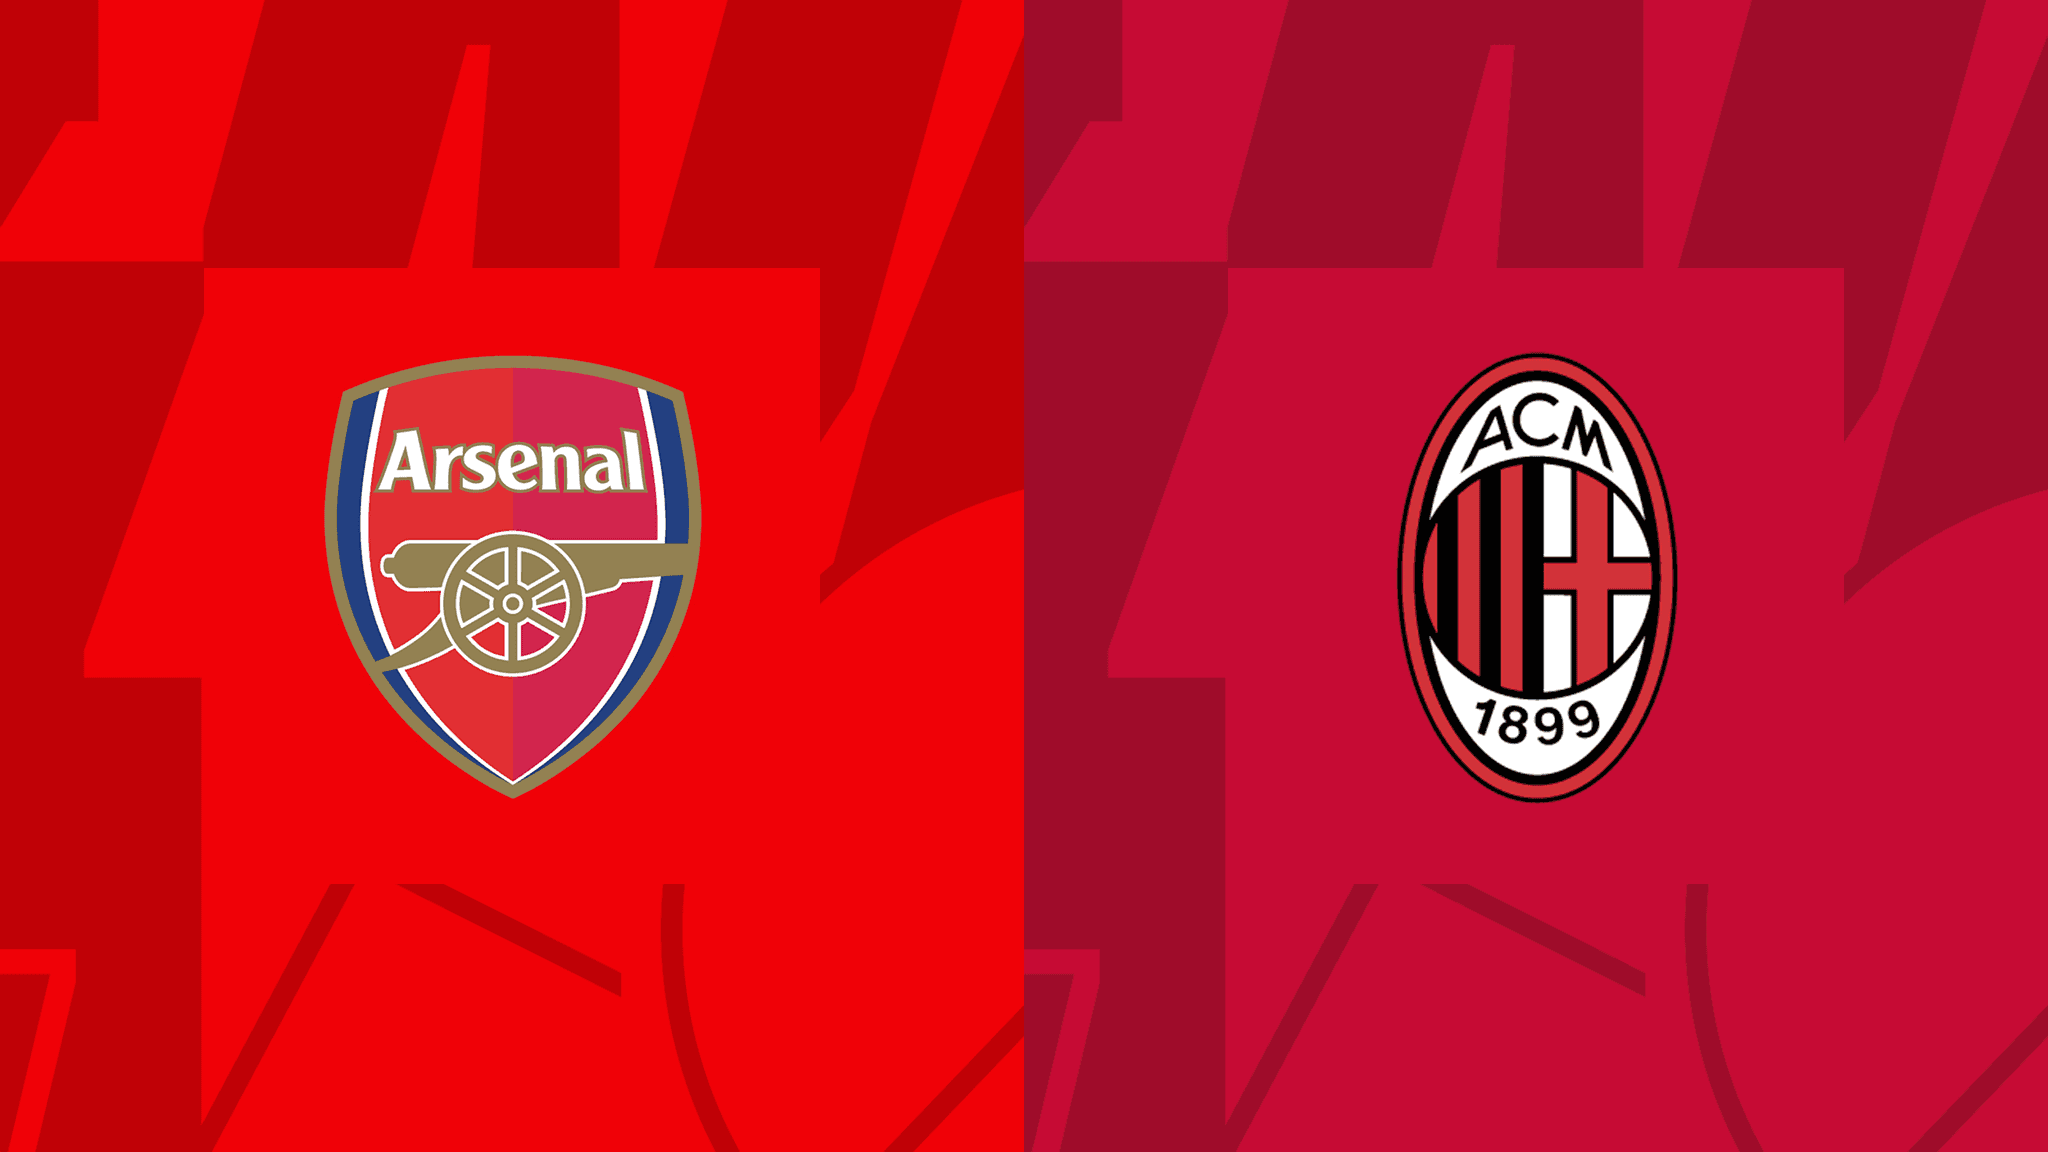 مشاهدة مباراة أرسنال و ميلان بث مباشر 13/12/2022 Arsenal vs AC Milan